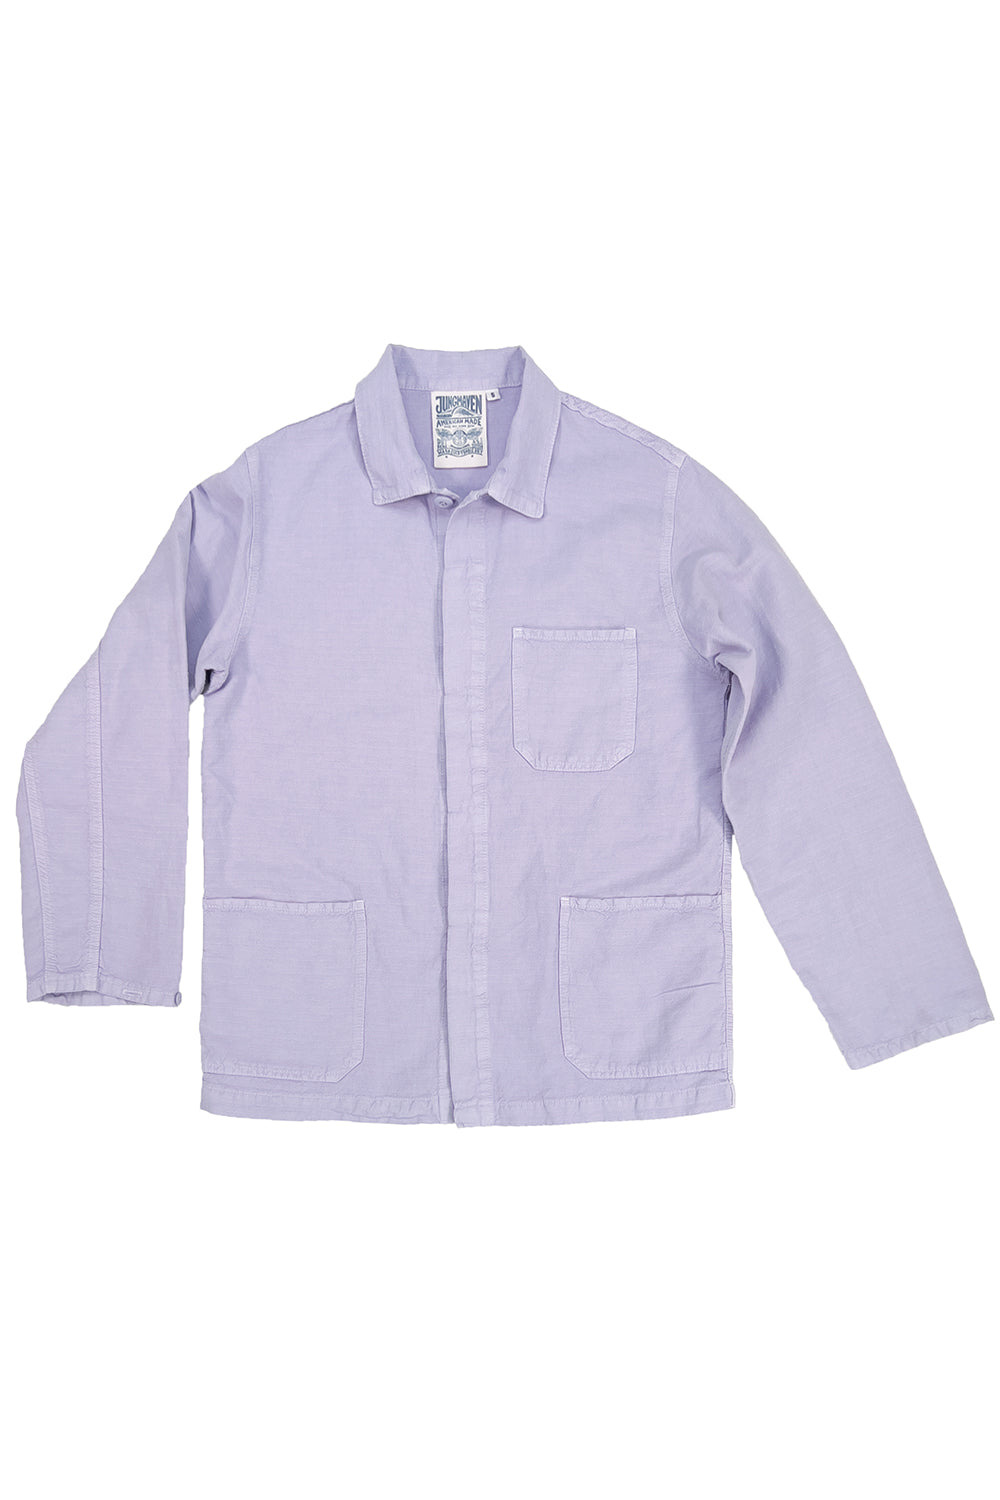 Cascade Jacket | Jungmaven Hemp Clothing & Accessories